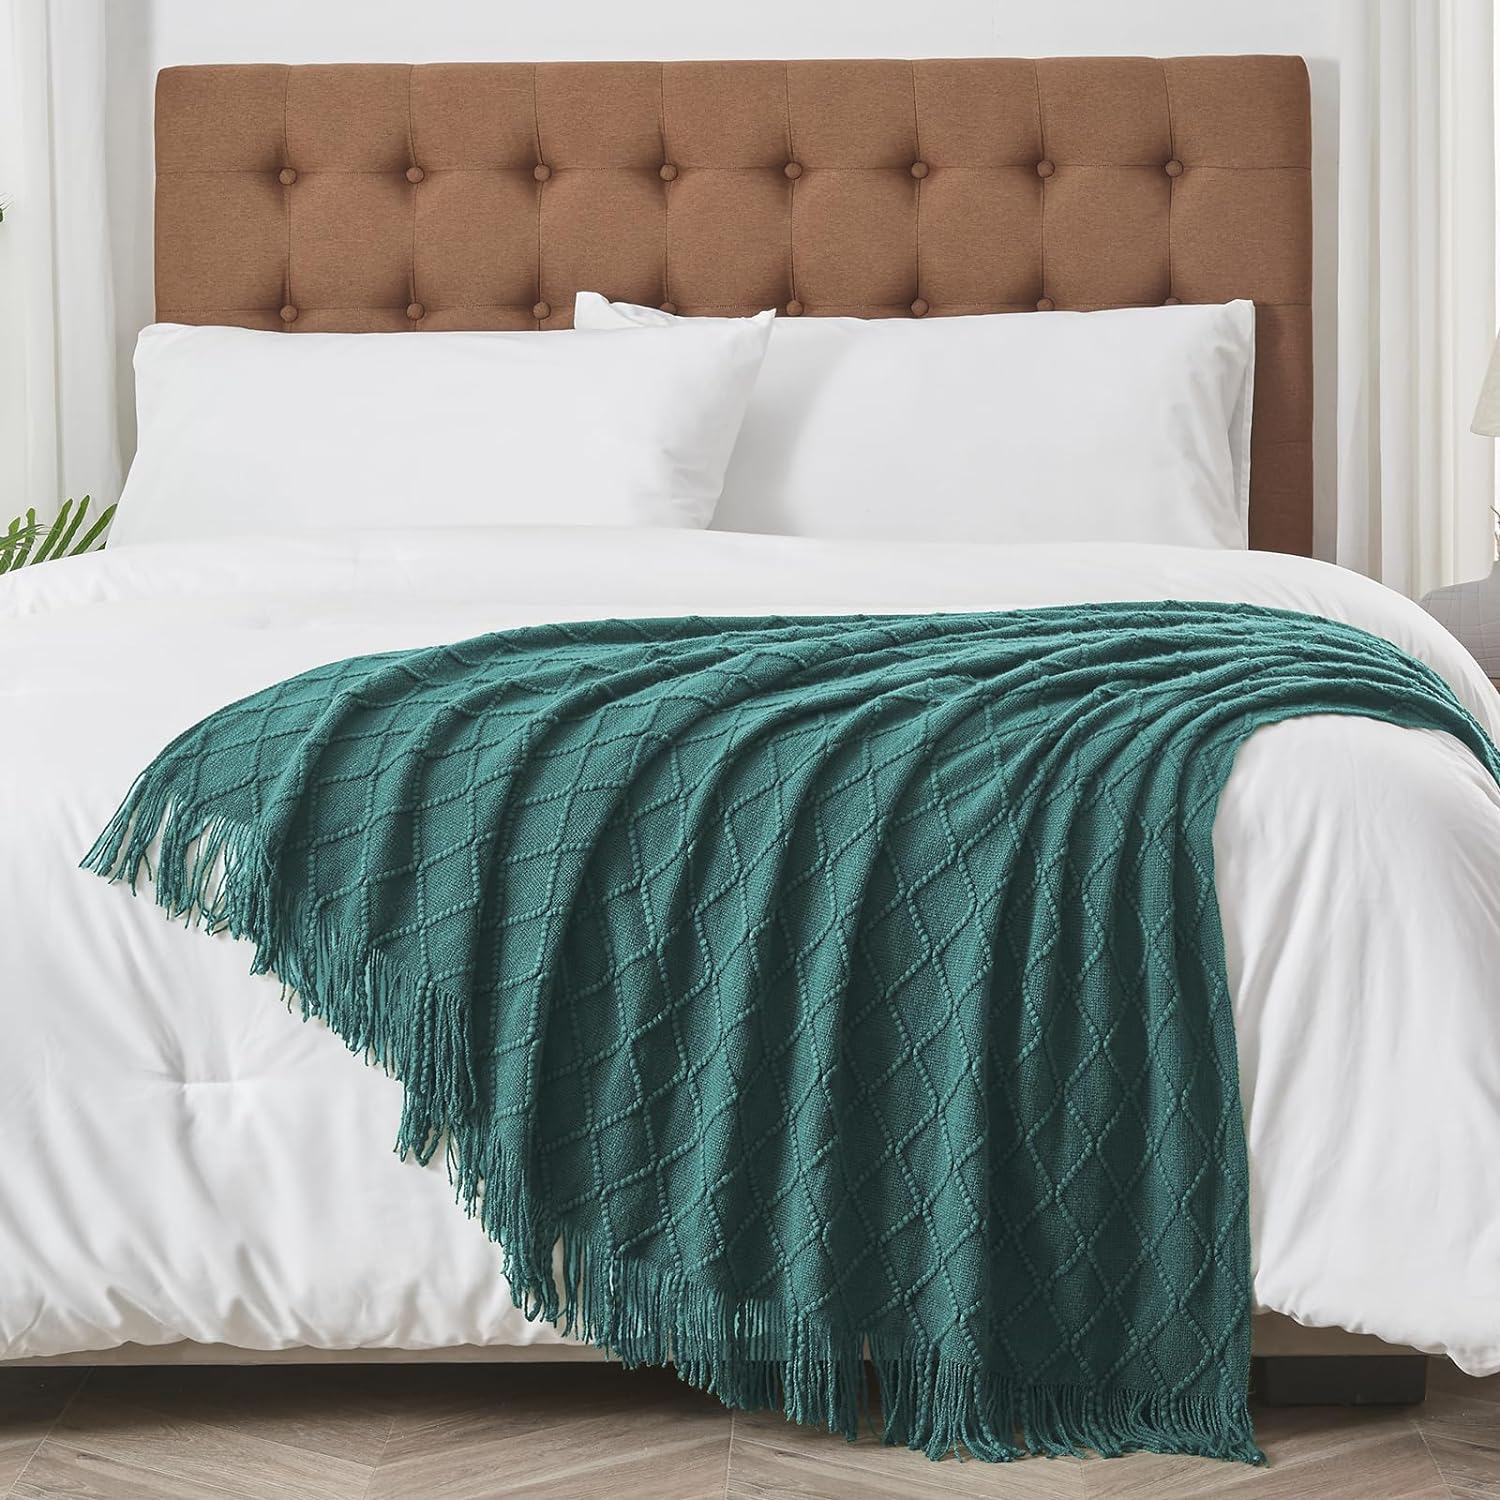 inhand Mantas de punto para sofá y cama, manta de punto suave y acogedora  con borlas, mantas decorativas ligeras y mantas decorativas, manta tejida